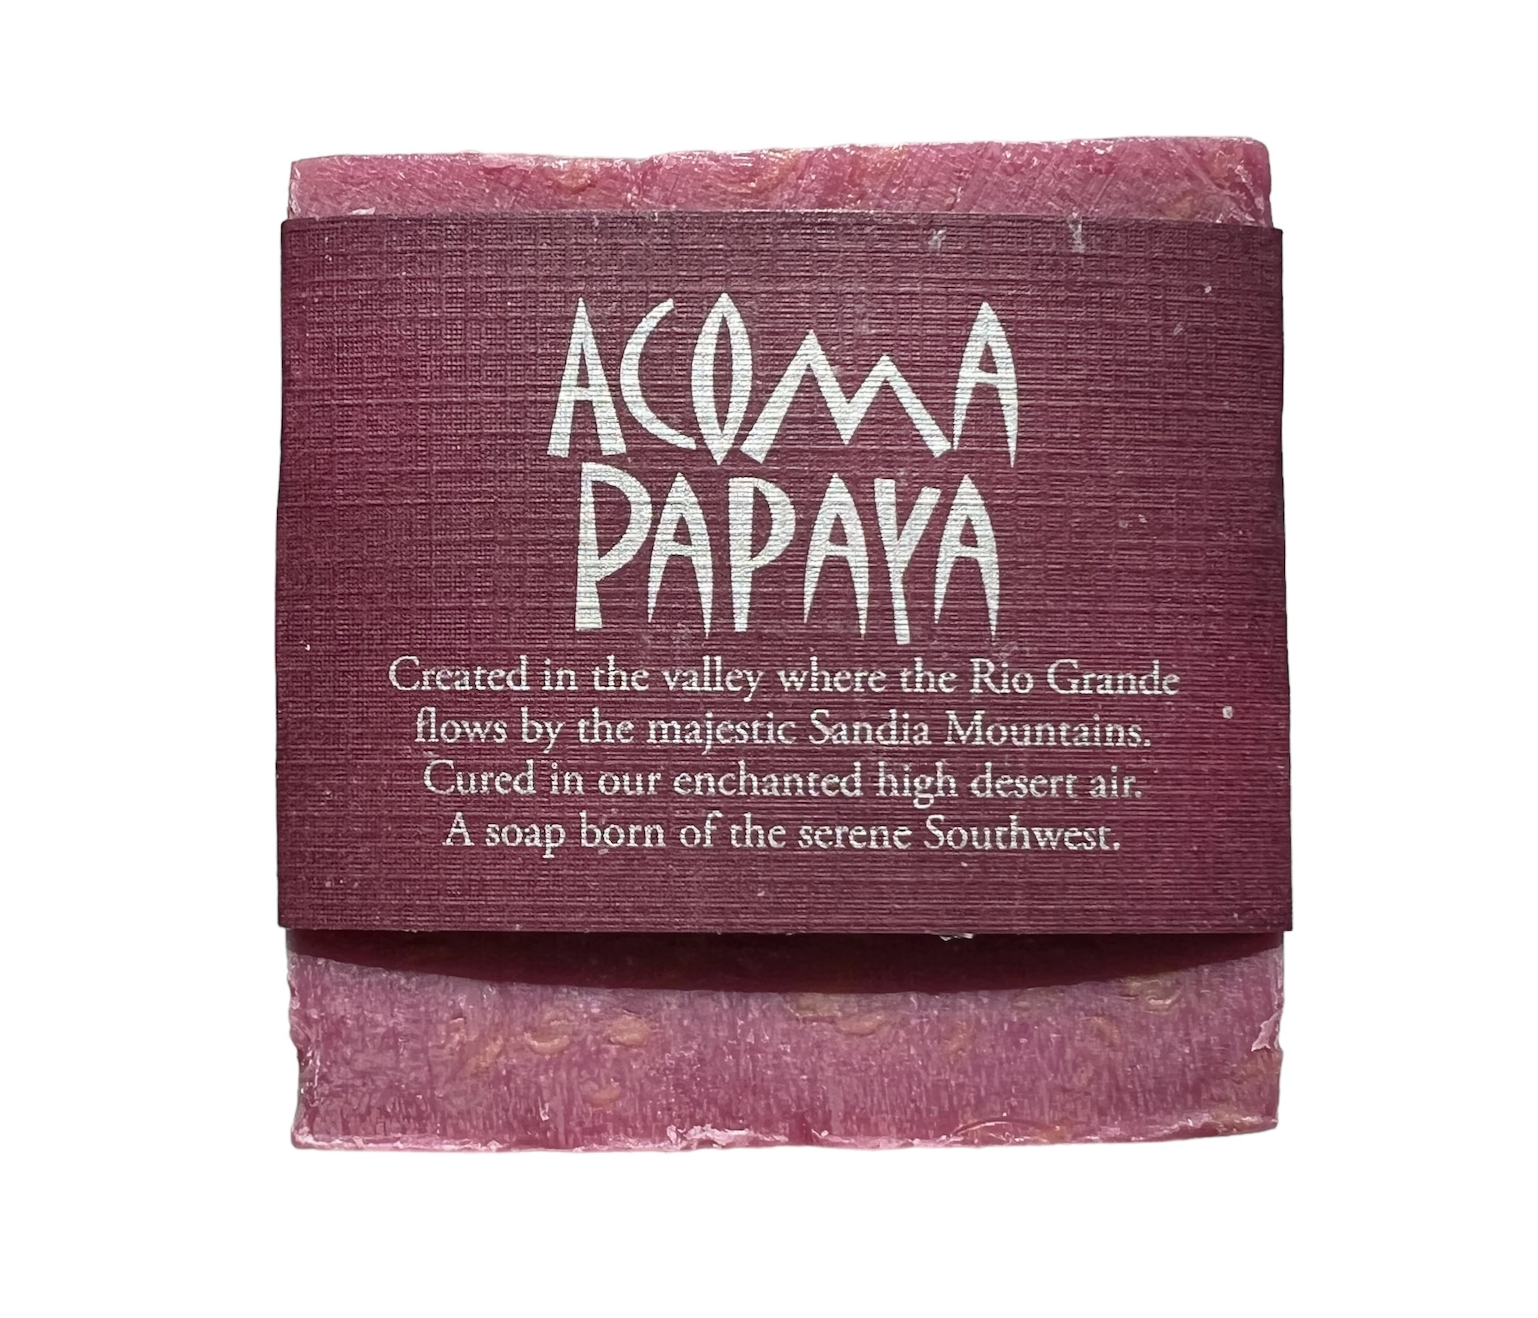 Acoma Papaya soap by Sandia Soap Company